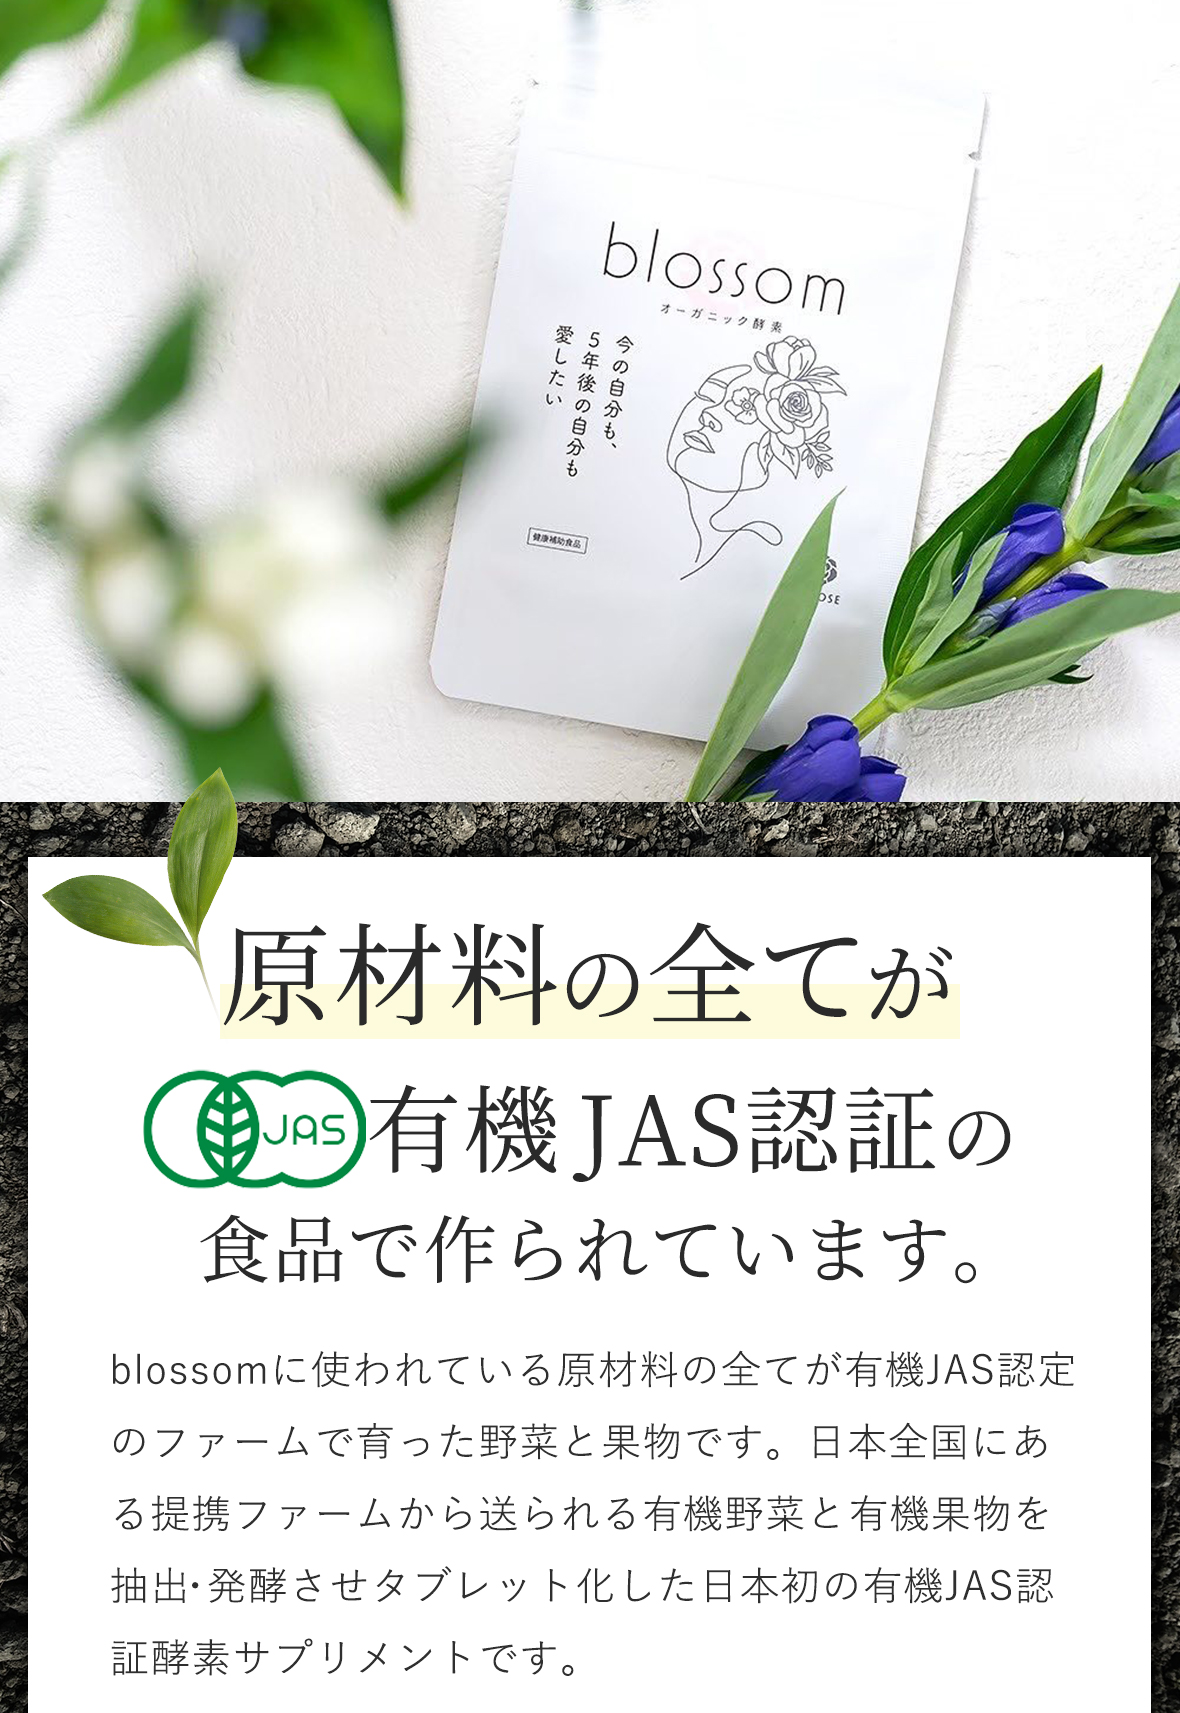 日本で唯一の有機JAS認証は他社サプリと全く違います。blossomに使われている原材料の全てが有機JAS認定のファームで育った野菜と果物です。日本全国にある提携ファームから送られる有機野菜と有機果物を抽出・発酵させタブレット化した日本初の有機JAS認証酵素サプリメントです。